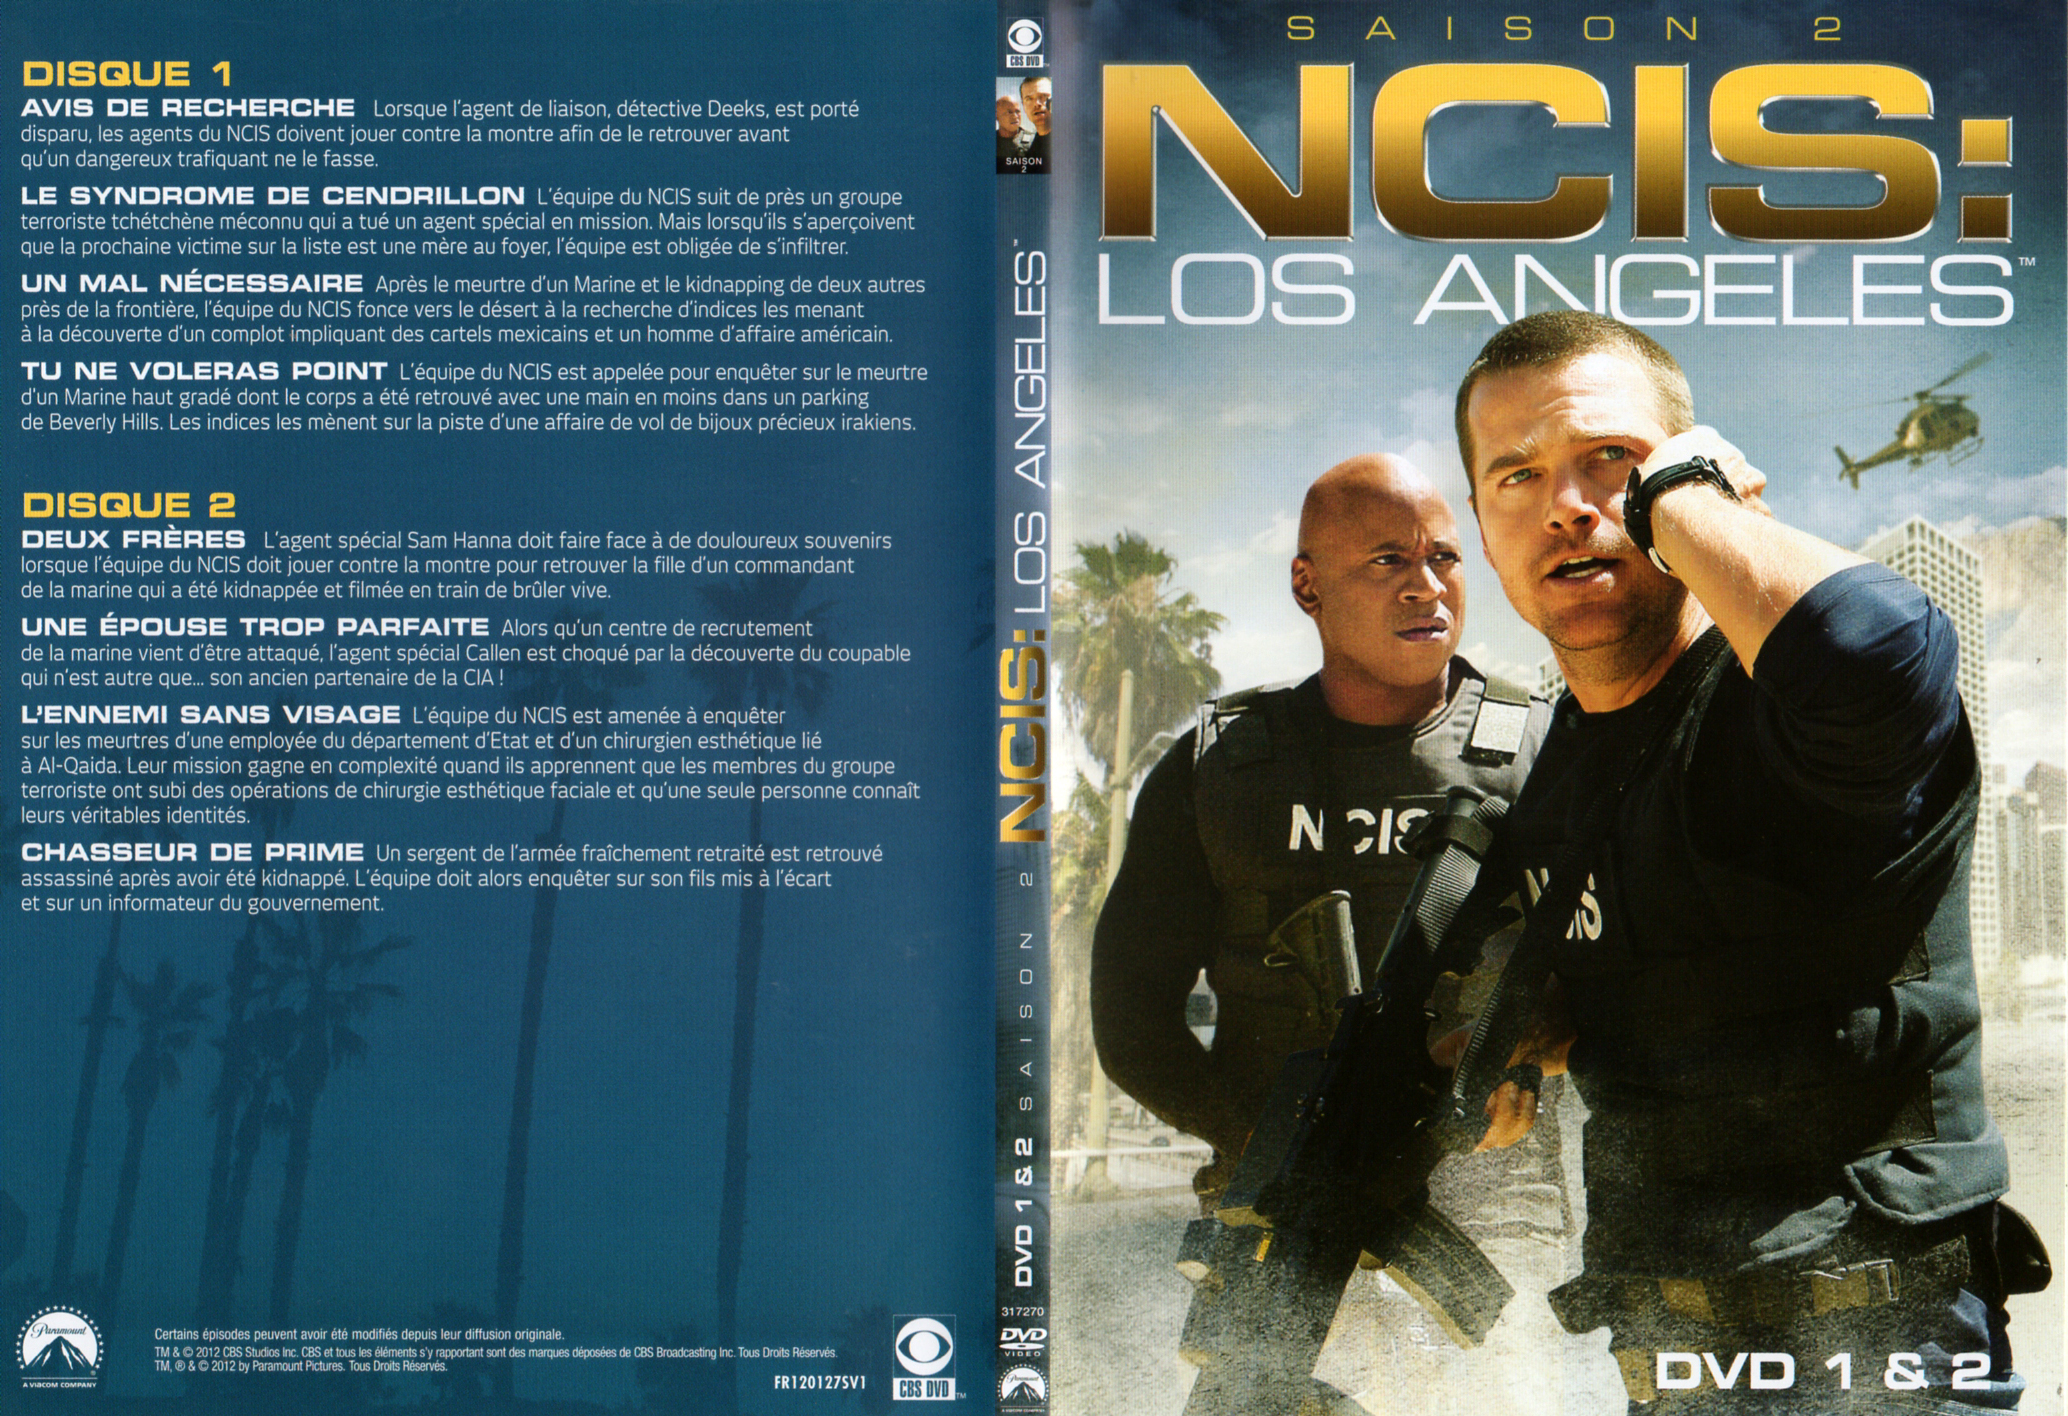 Jaquette DVD NCIS Los Angeles Saison 2 DVD 1